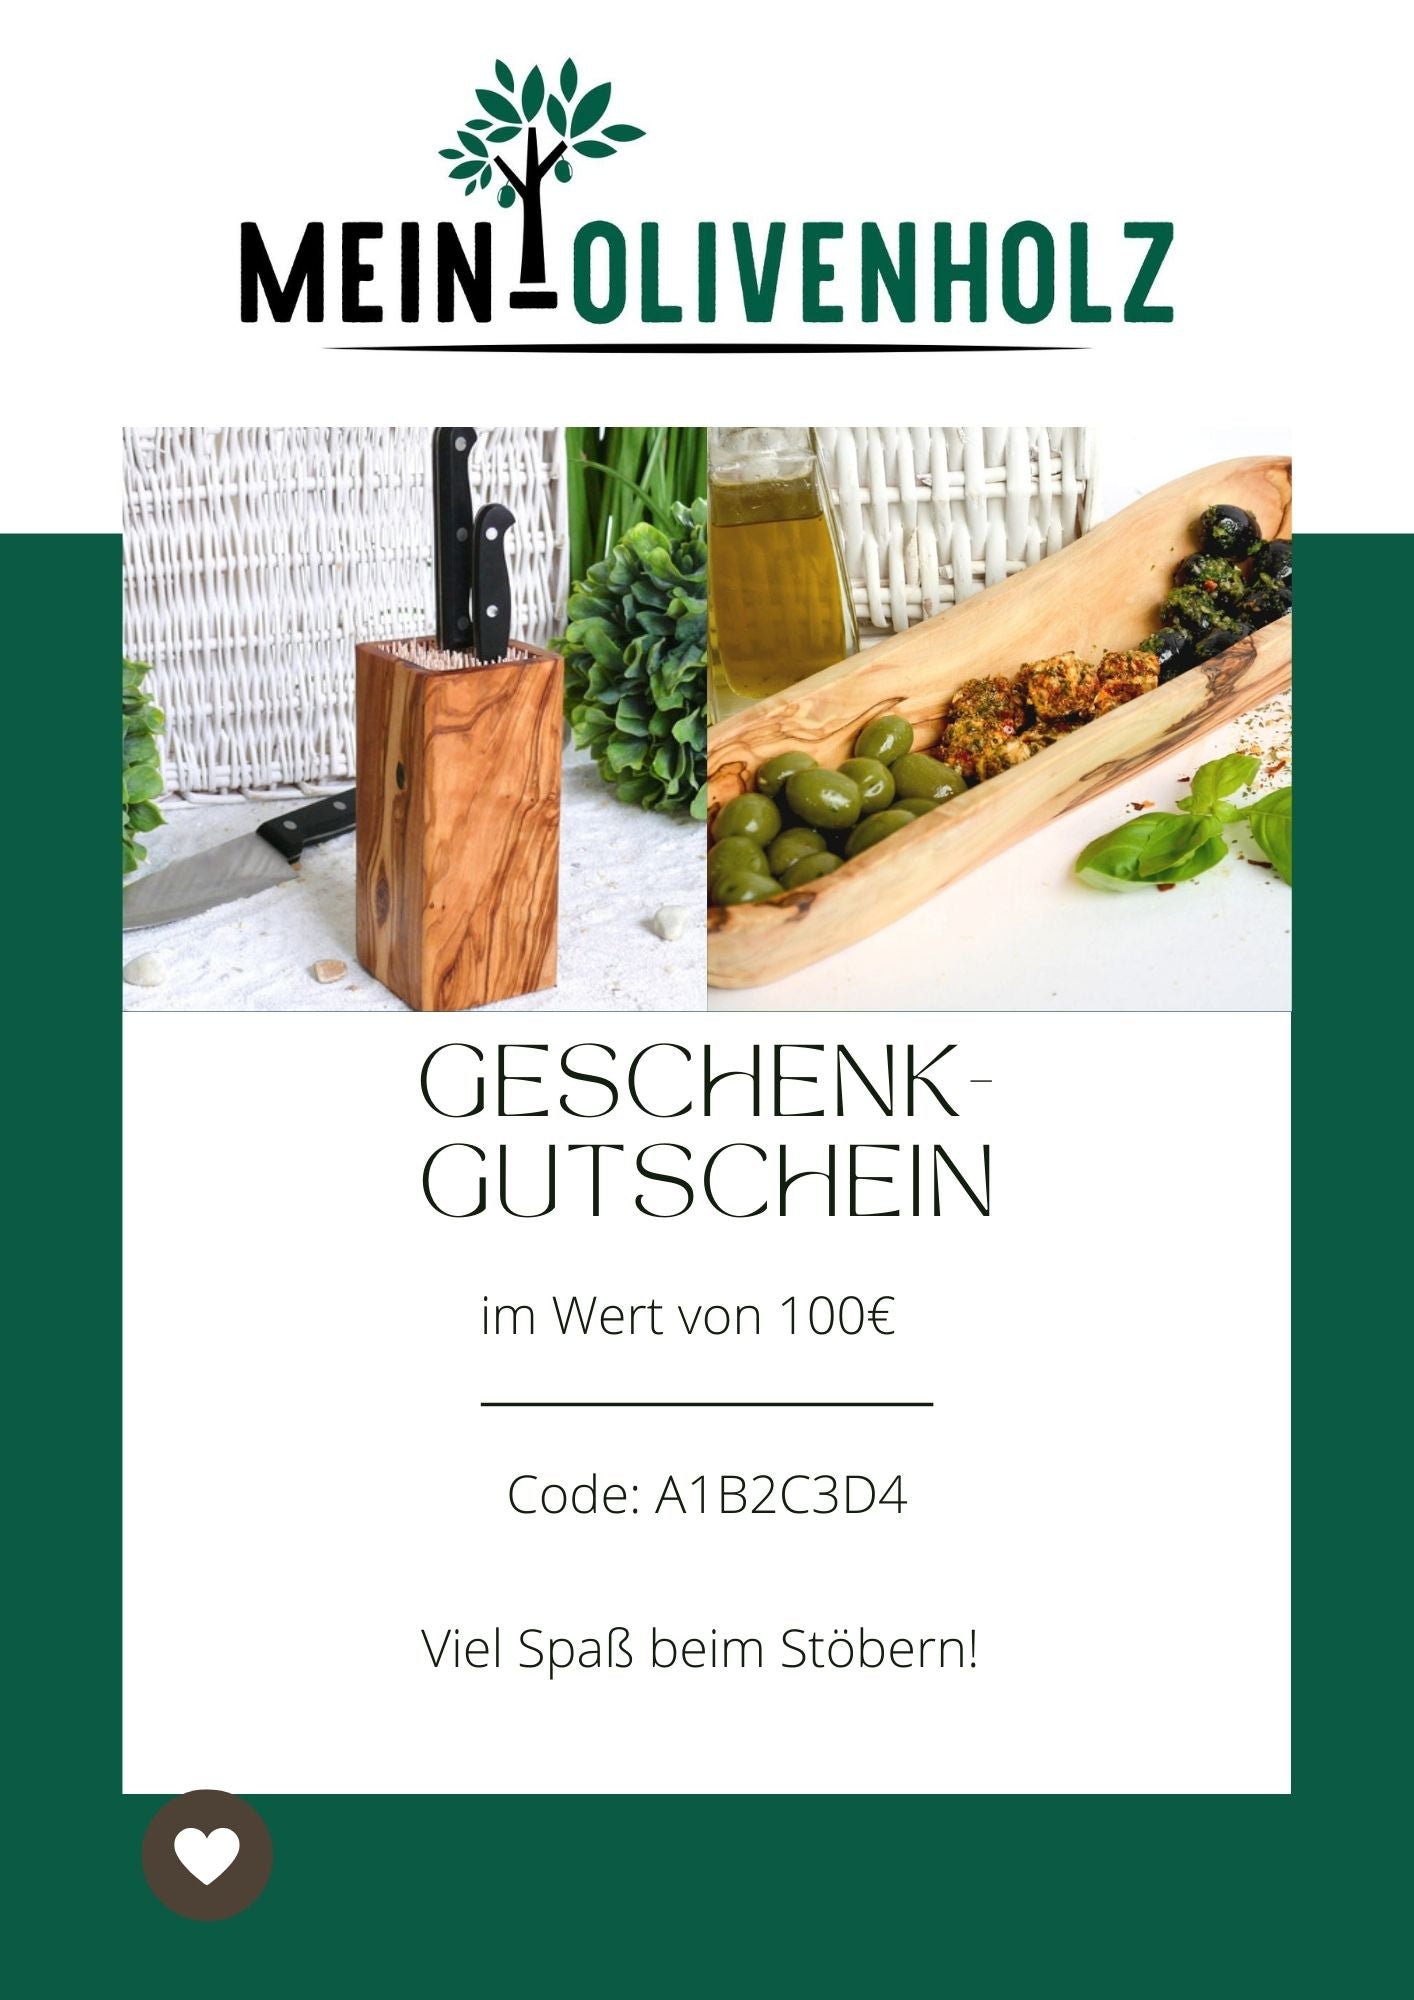 100€ Geschenk-Gutschein für Mein-Olivenholz